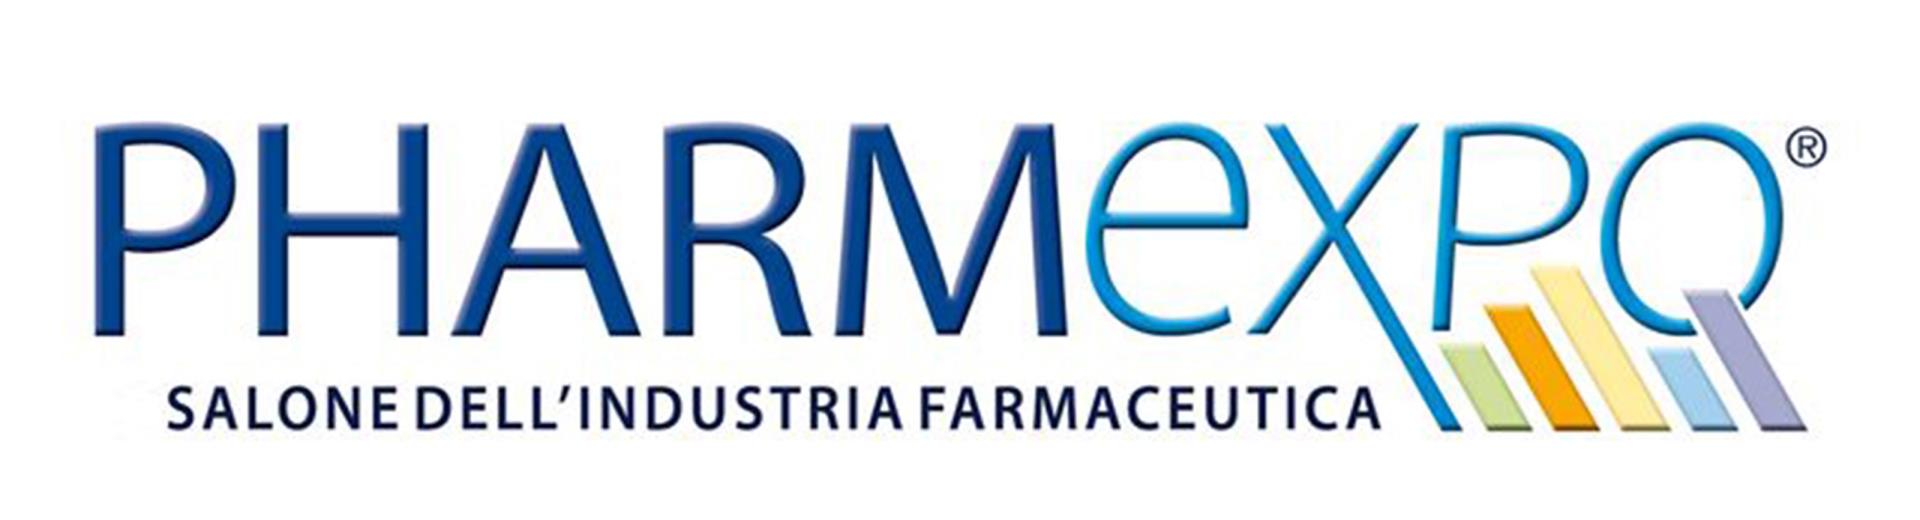 Pharmexpo è l''unica manifestazione dedicata all''industria farmaceutica del centro sud Italia, che mette in contatto tra loro farmacisti, medici ed operatori con le aziende del settore.